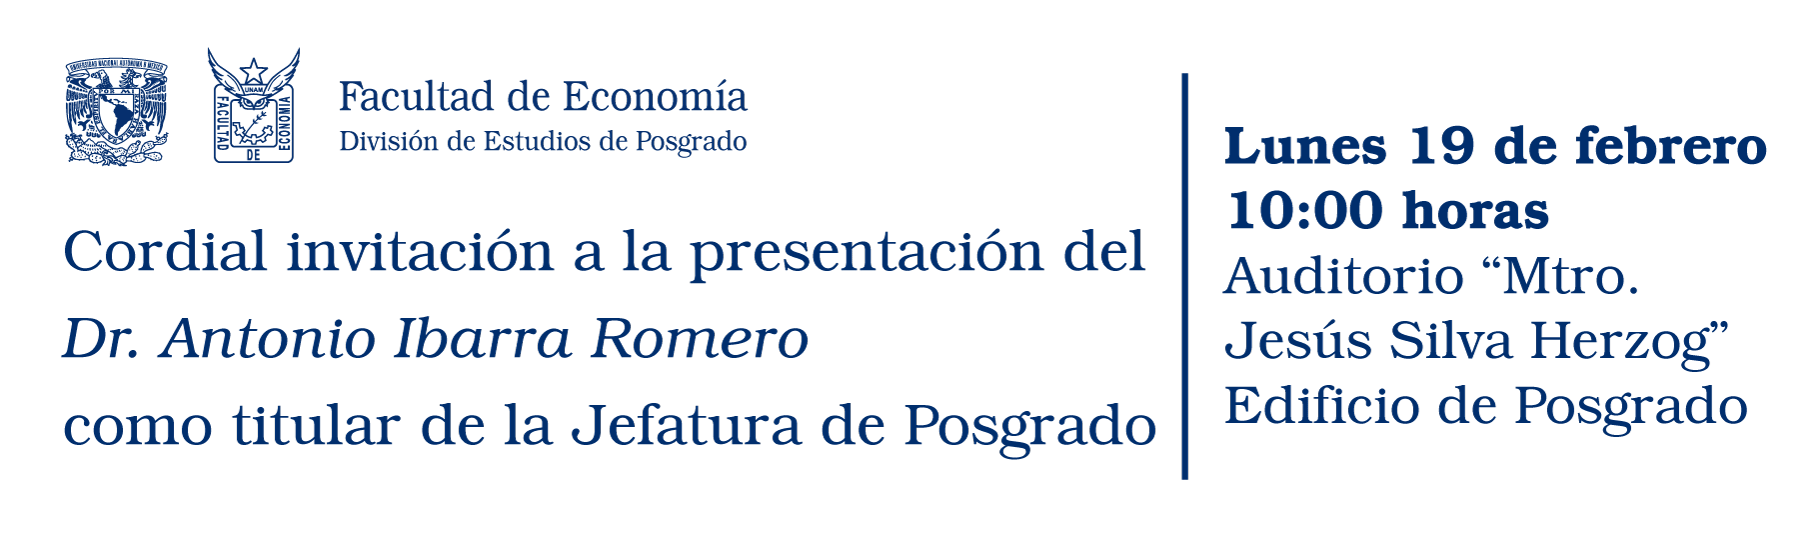 Presentación del Dr. Antonio Ibarra Romero como titular de la Jefatura de Posgrado